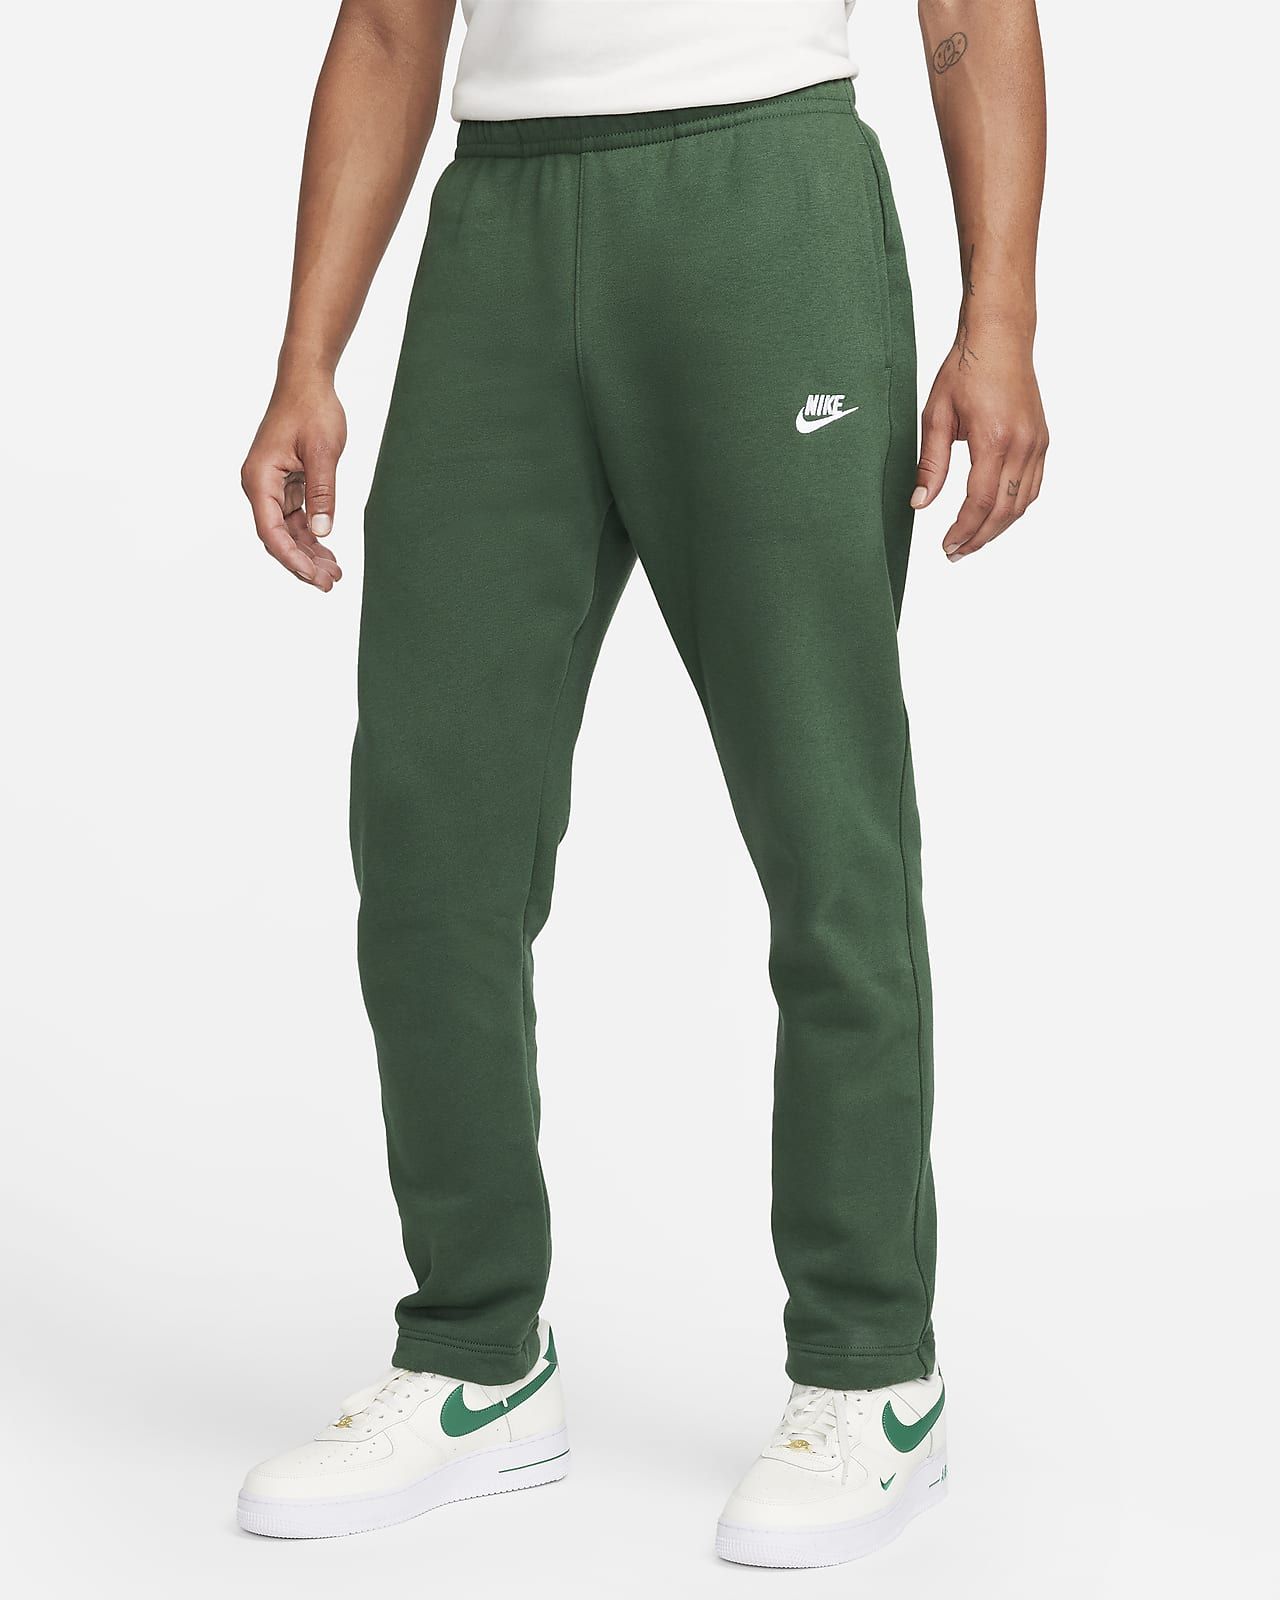 Nike Sportswear Club Fleece Men's Pants. Nike.com | Nike (US)